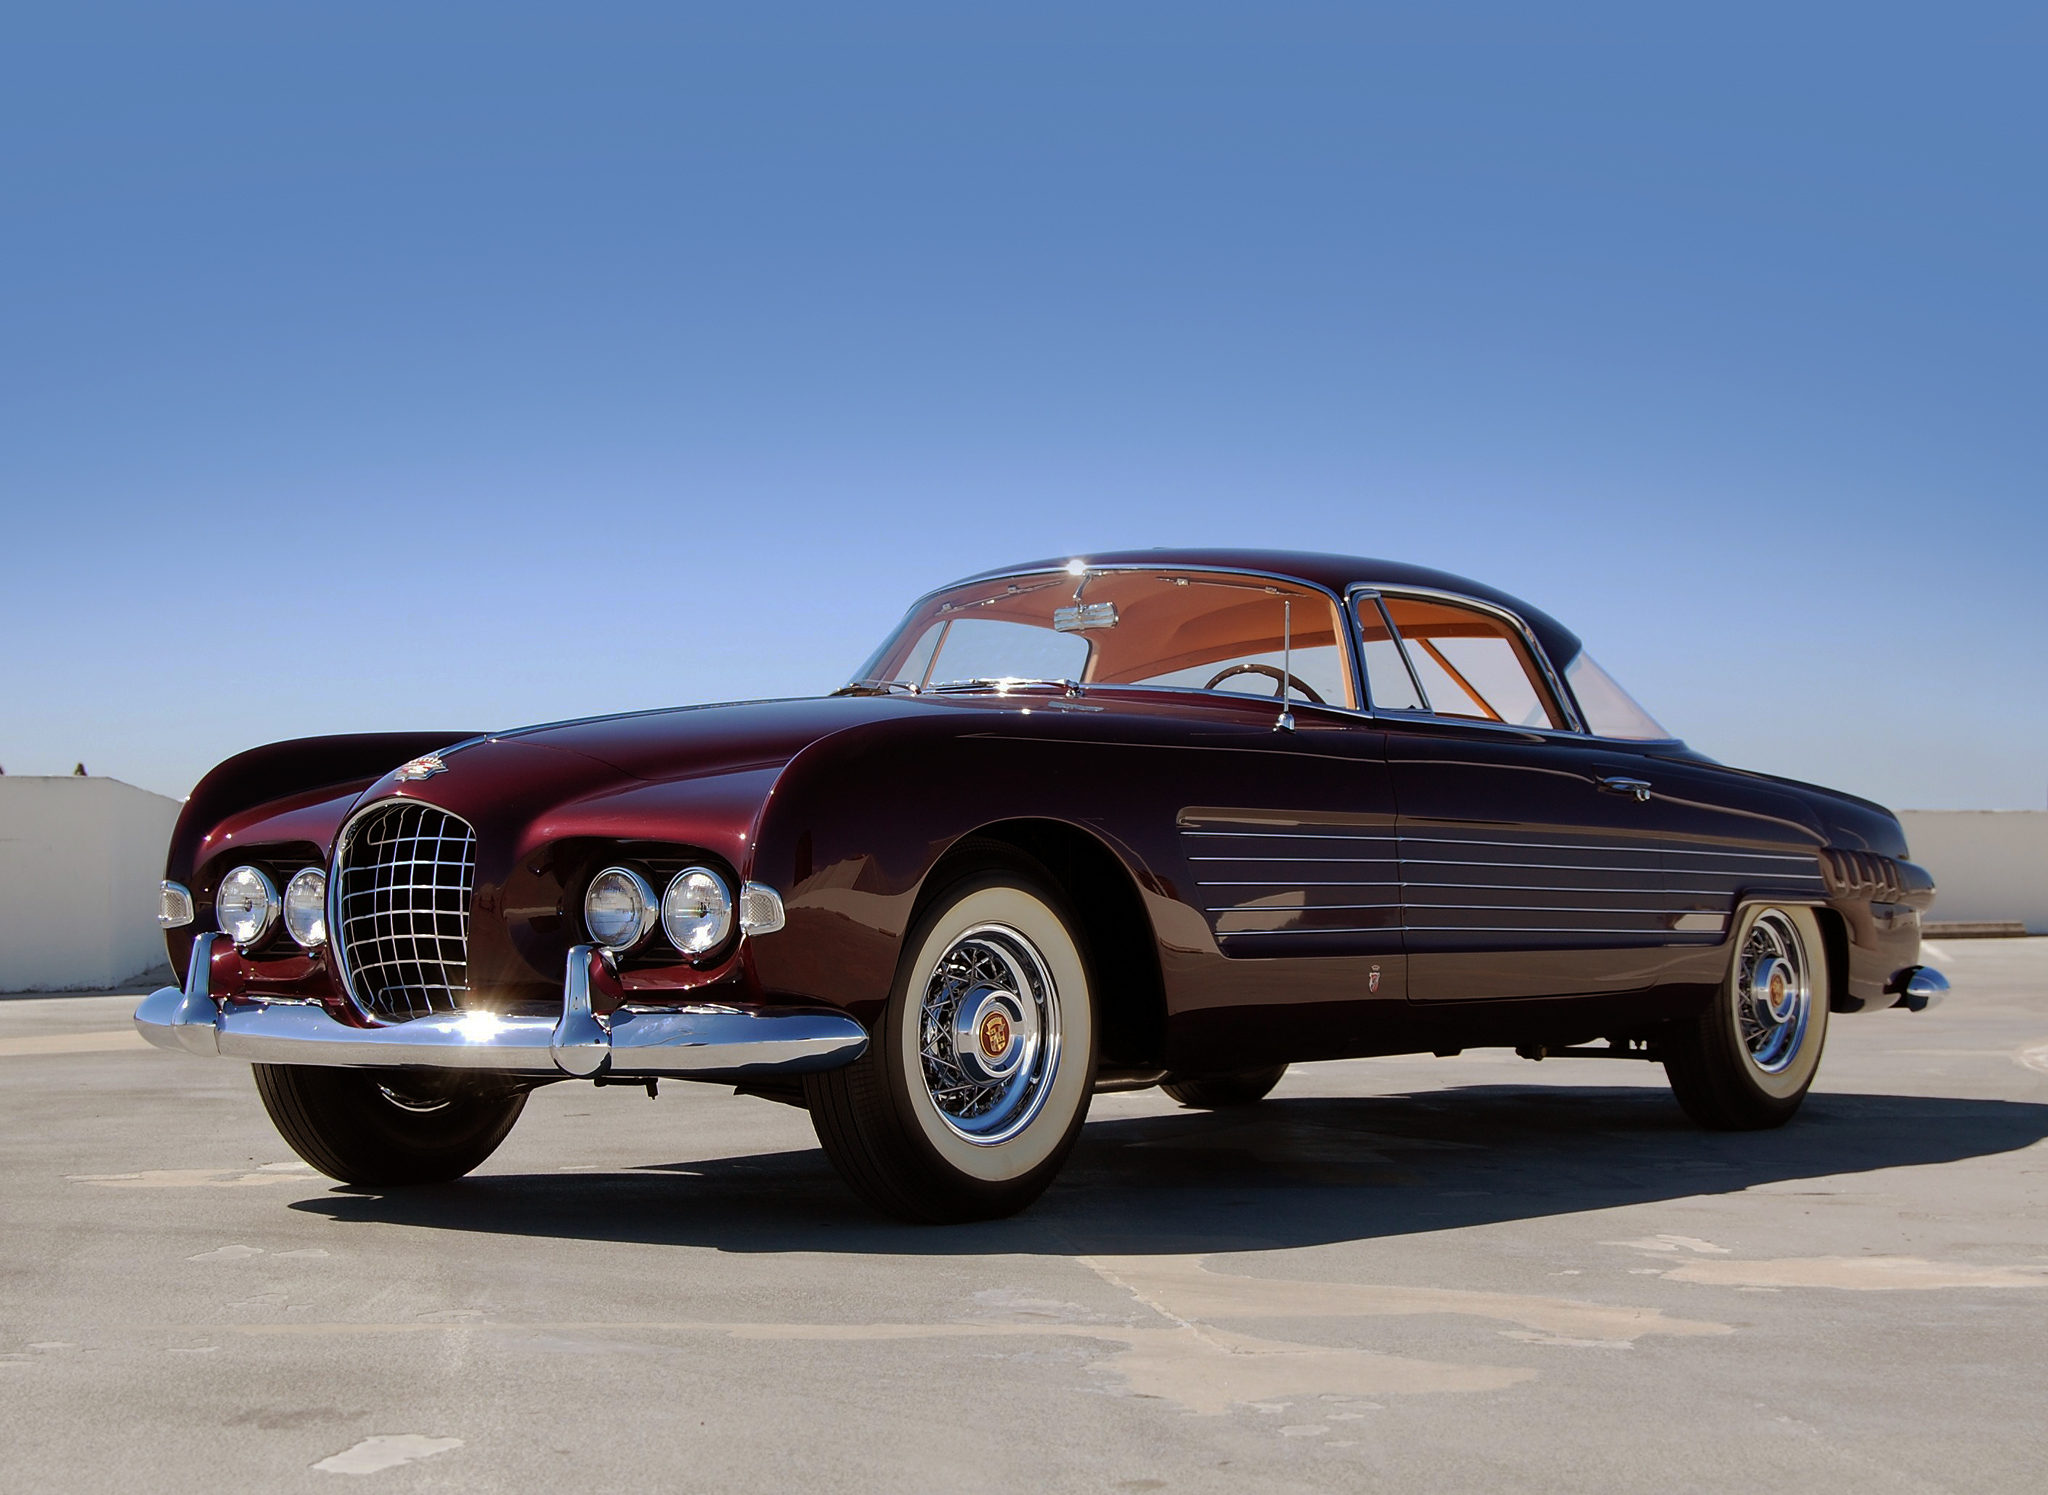 1953 Cadillac Series 62 Coupe, cadillac, Cadillac Series 62